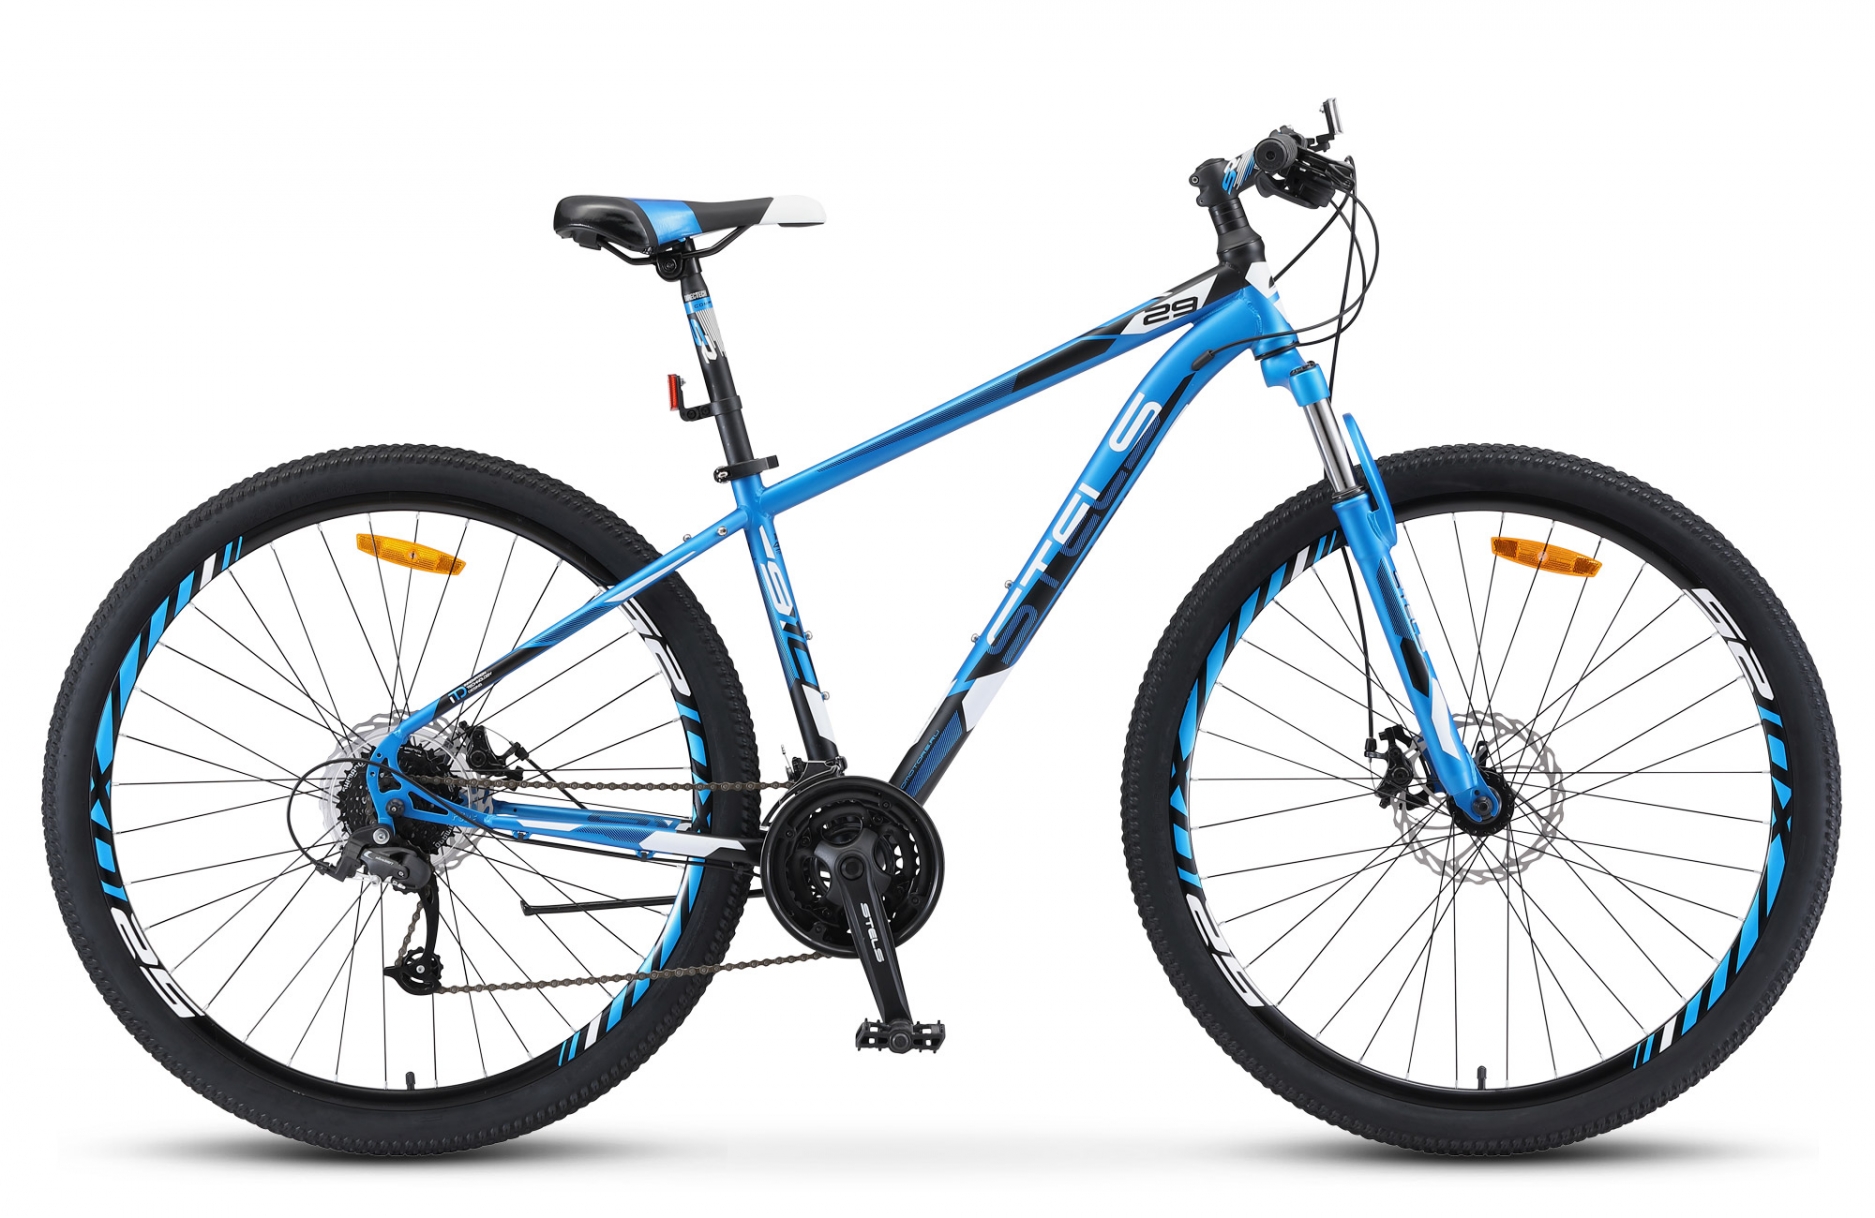 Велосипед 29 горный STELS Navigator 910 MD (2019) количество скоростей 24 рама сталь 20,5 синий,черный